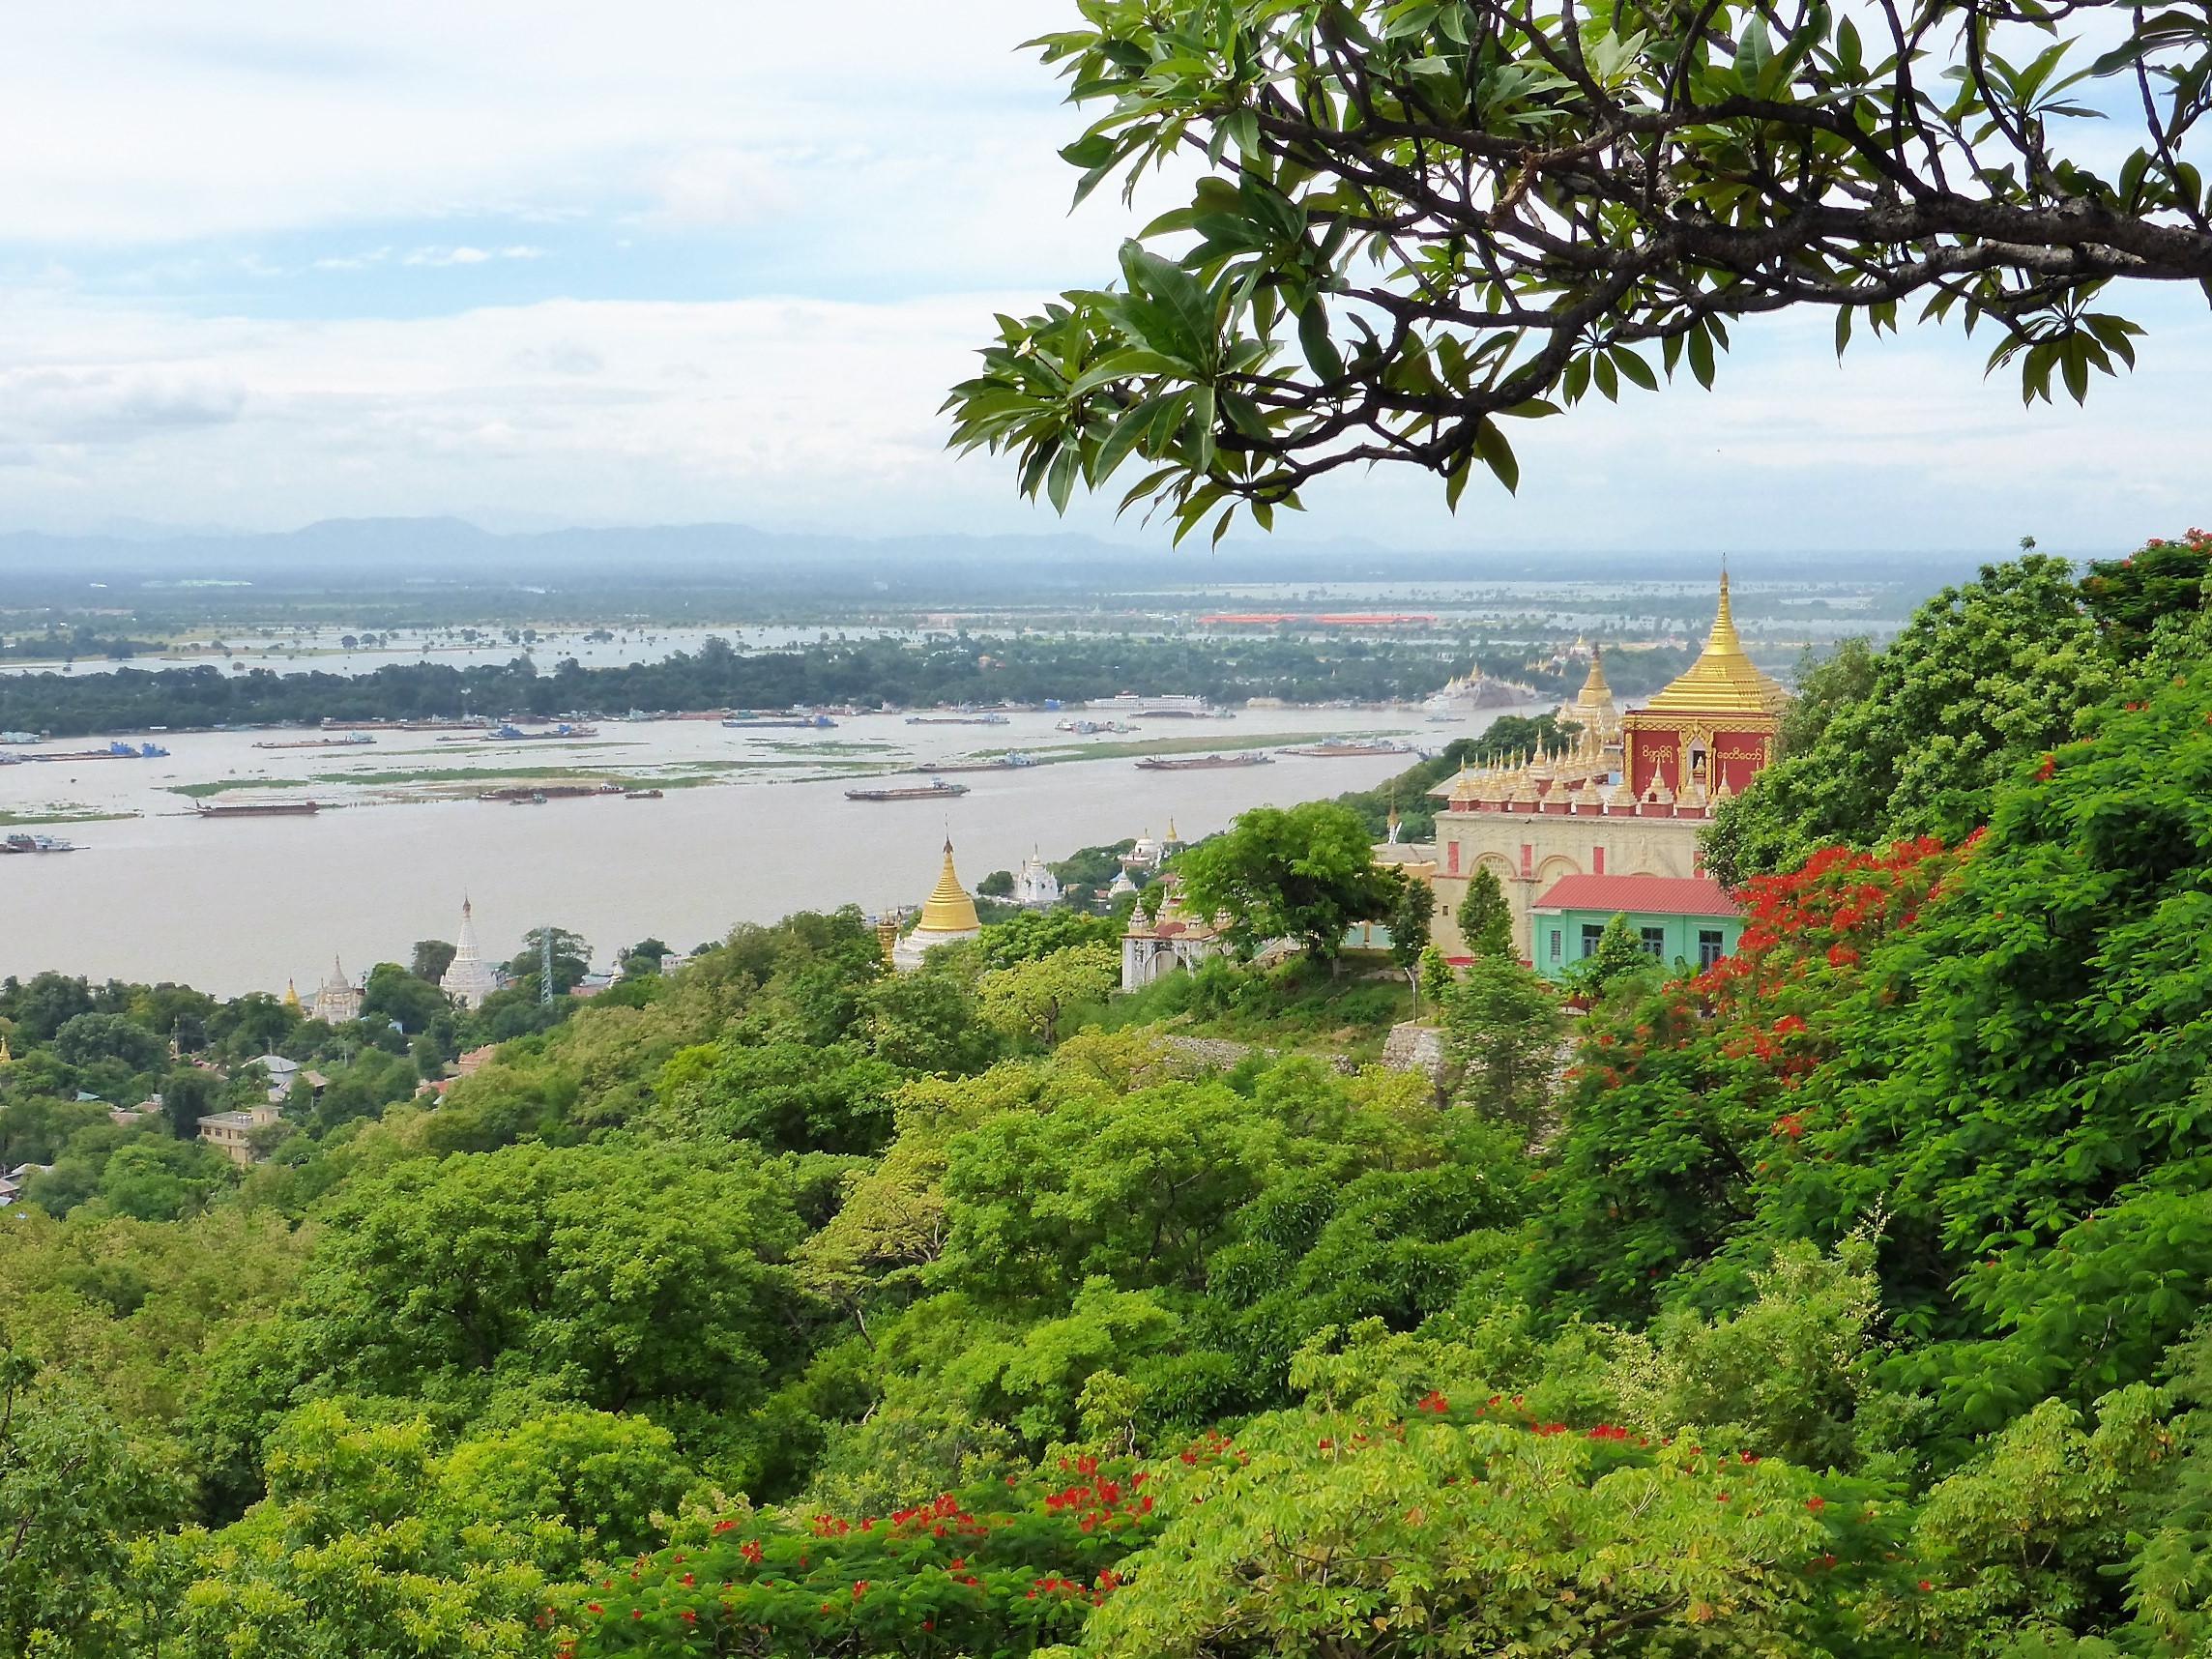 Panorama in Myanmar, grüne Wälder, Tempel mit goldenen Dächern, Fluss im Hintergrund